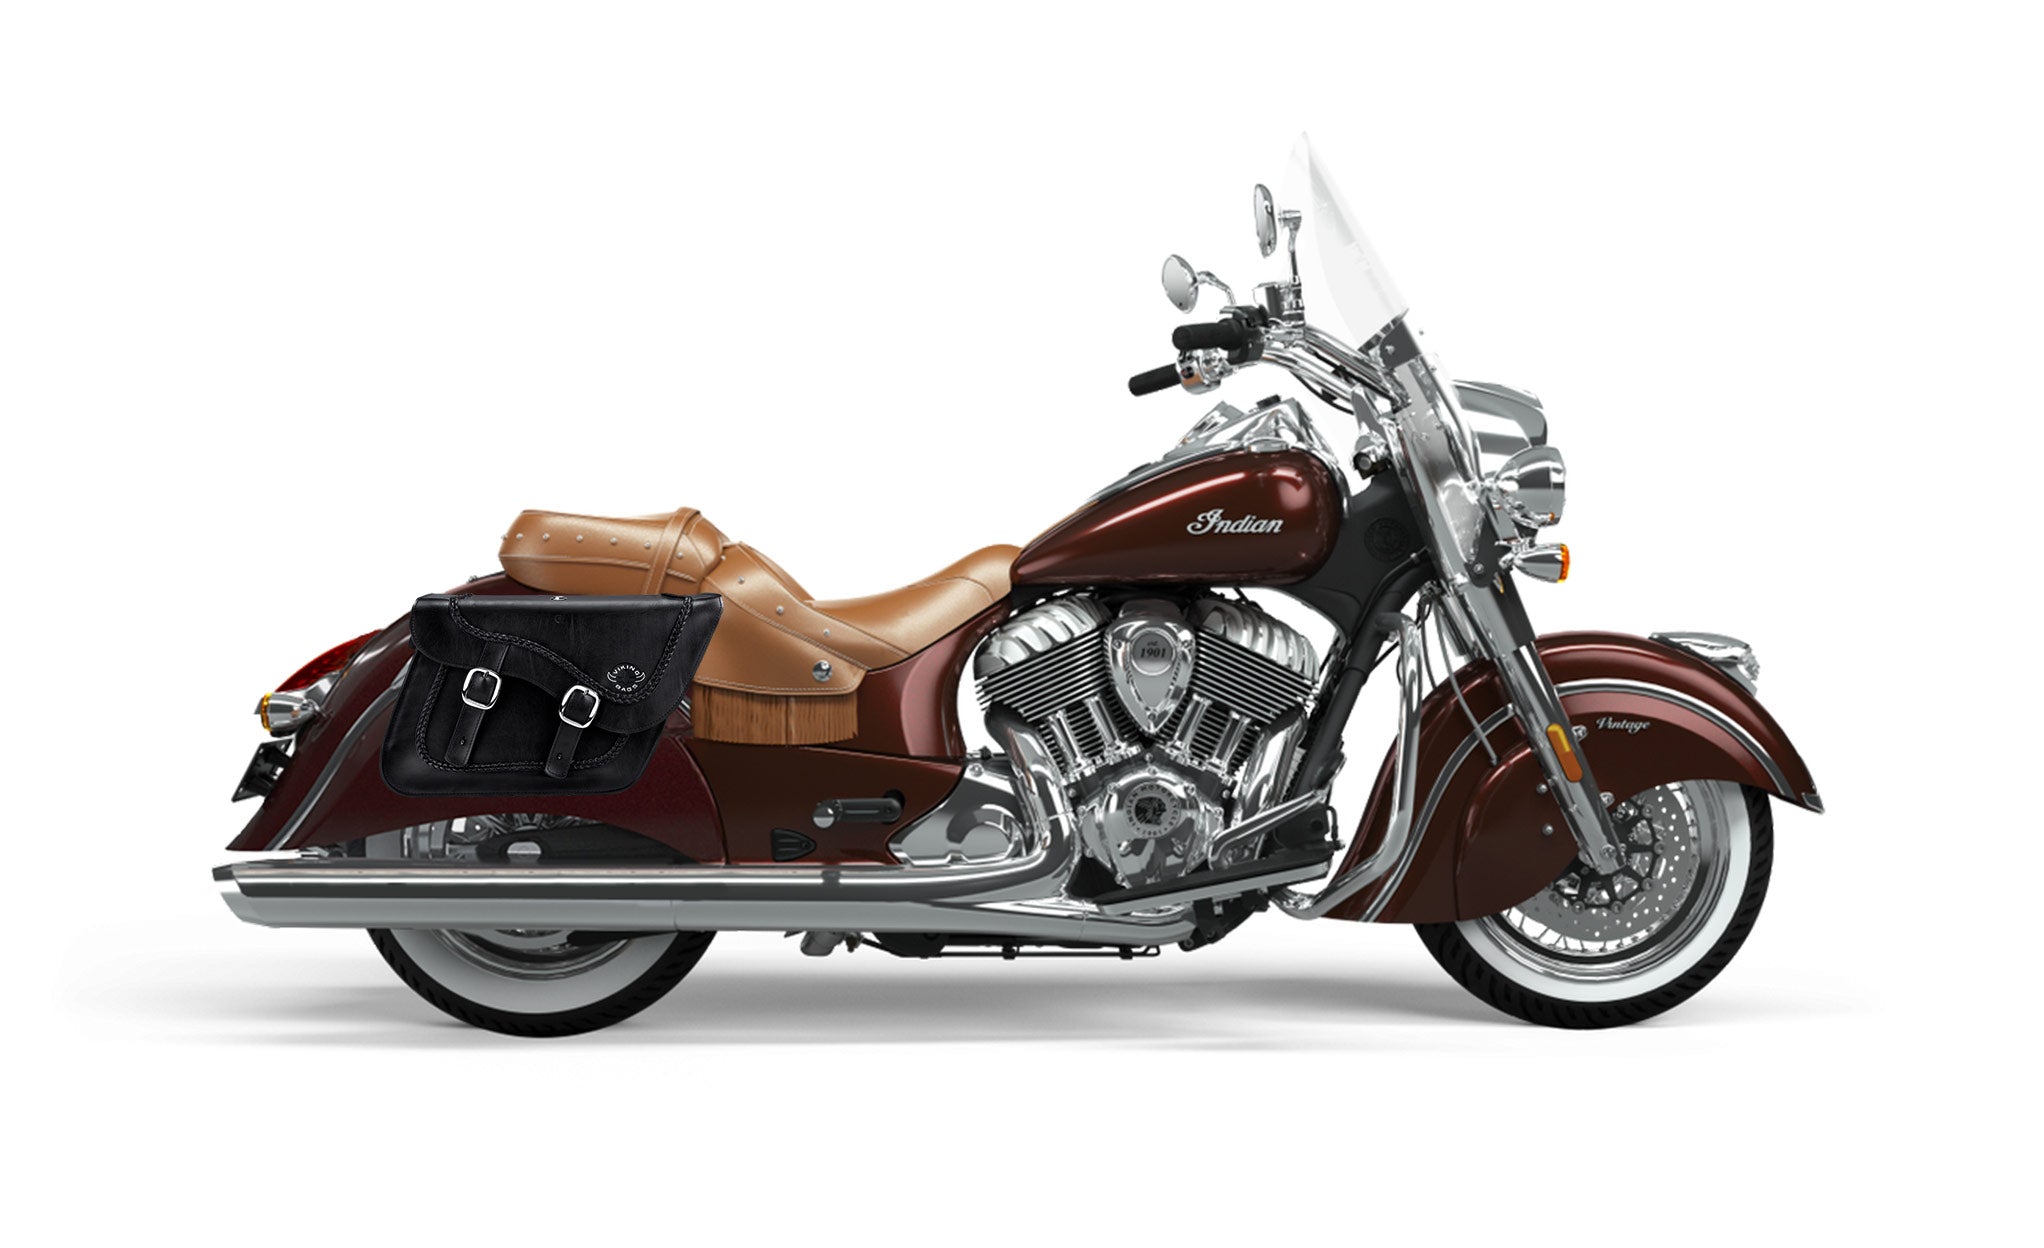 Viking Americano Indian Vintage Braided Large Leather Motorcycle Saddlebags on Bike Photo @expand